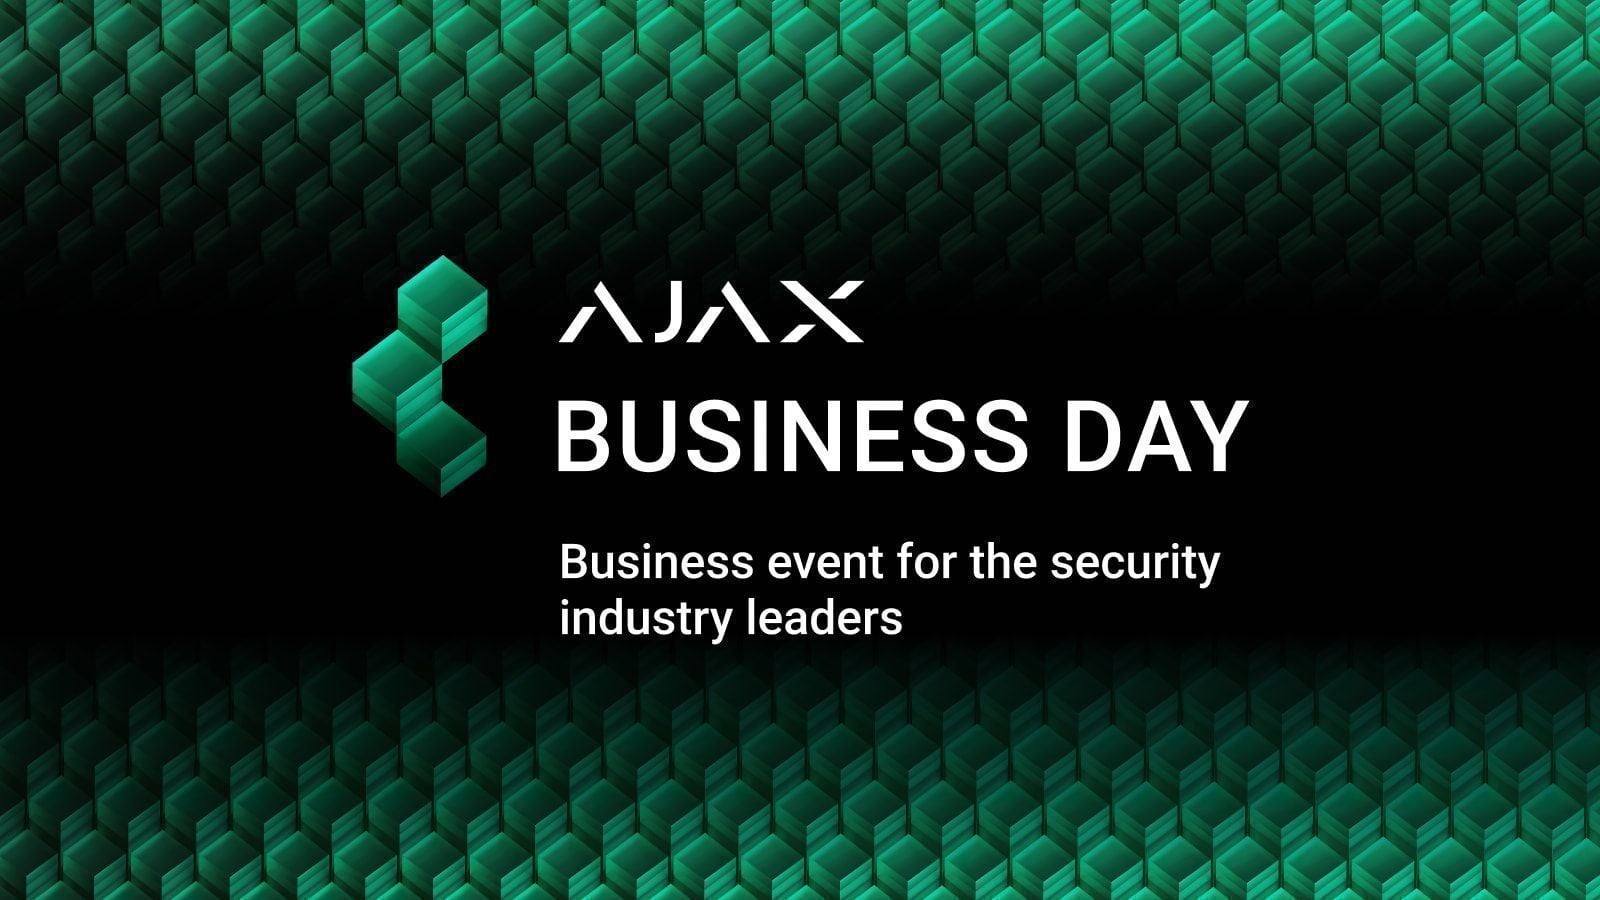 A Ajax Systems organiza a série de eventos Ajax Business Day na região DACH, Itália e França